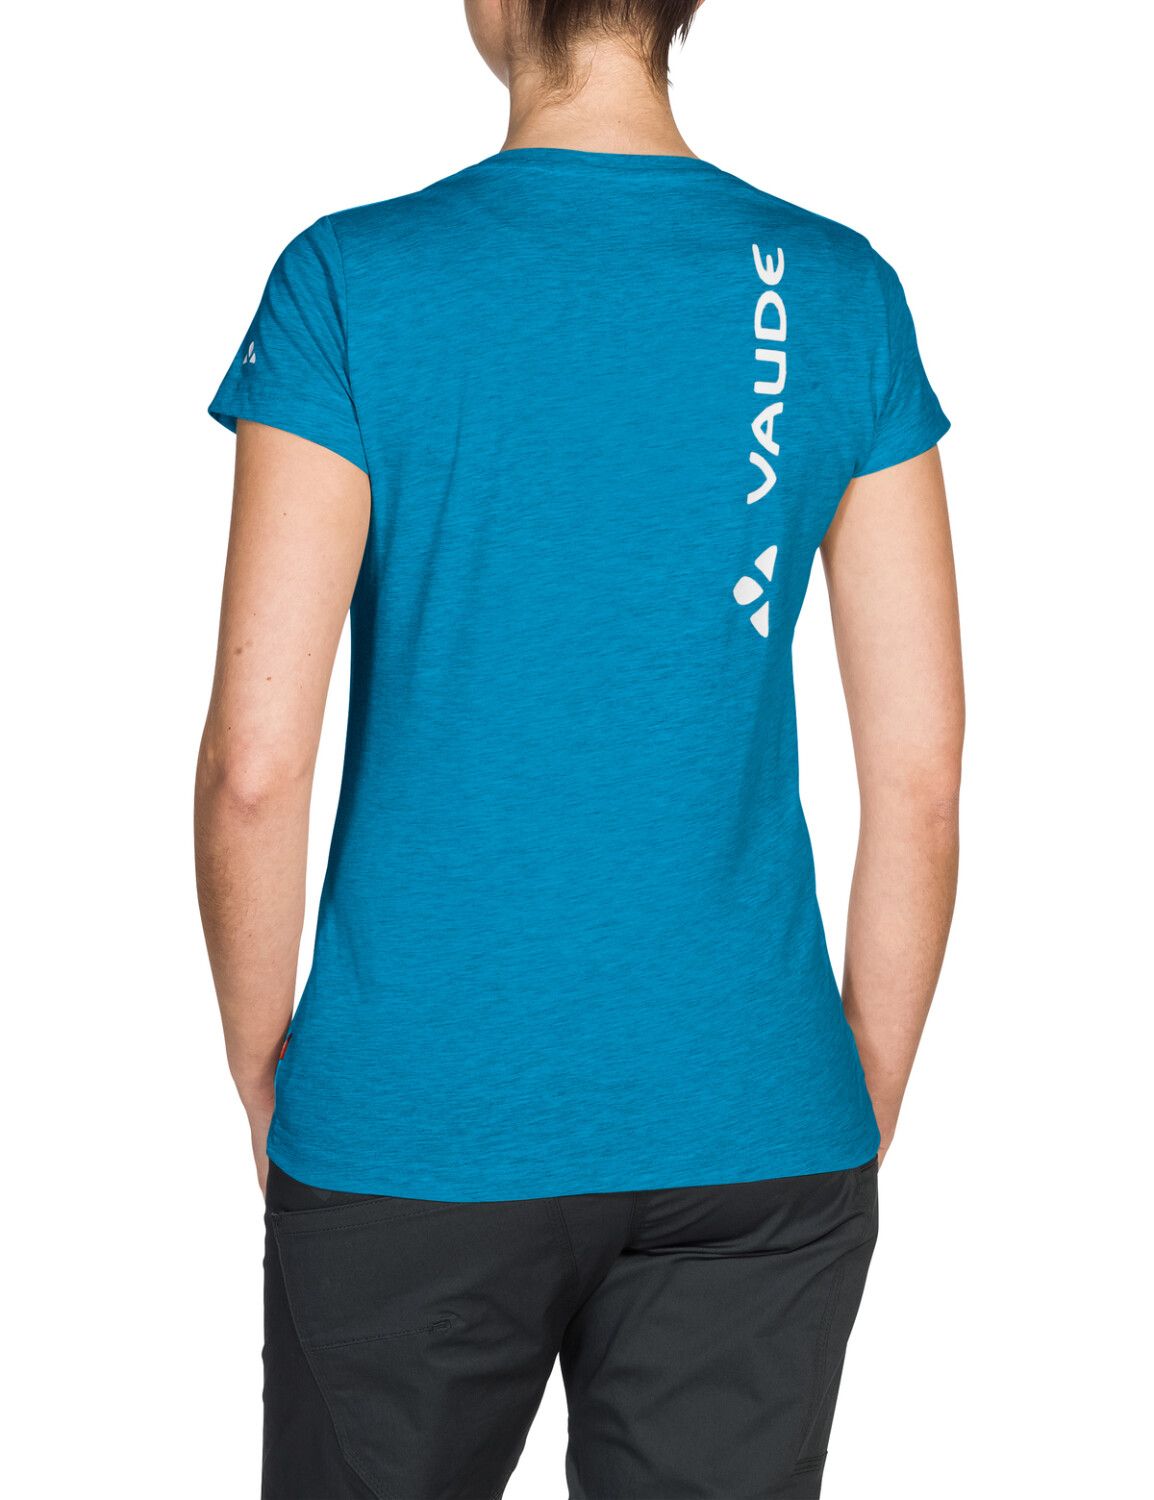 VAUDE Women's Brand Shirt (Bild 25)